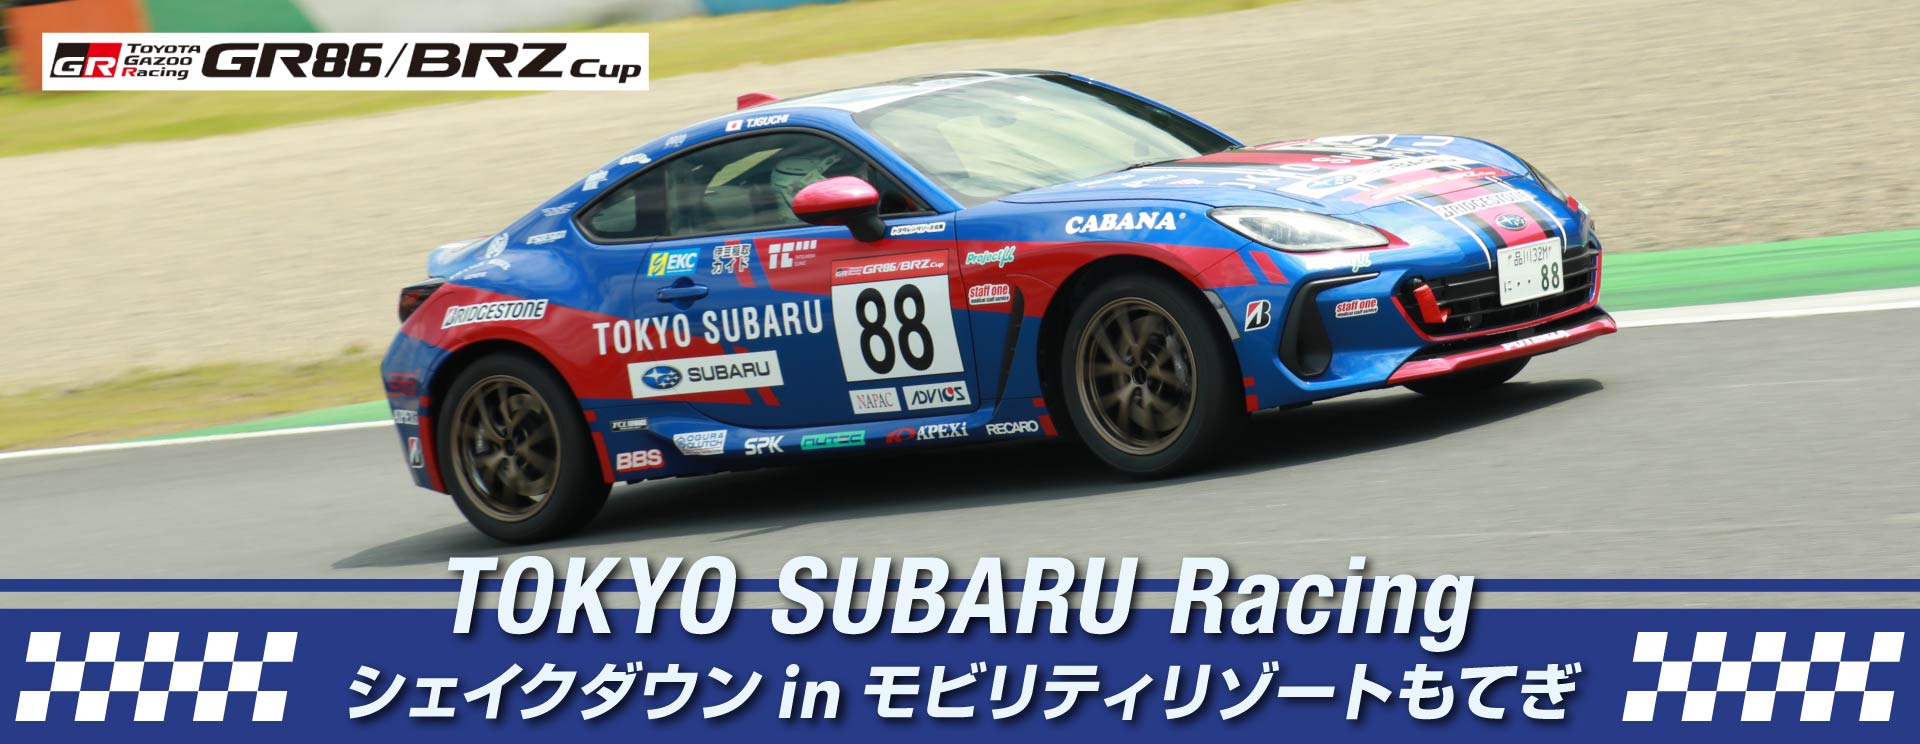 東京スバル TOKYO SUBARU Racing シェイクダウン in モビリティリゾートもてぎ